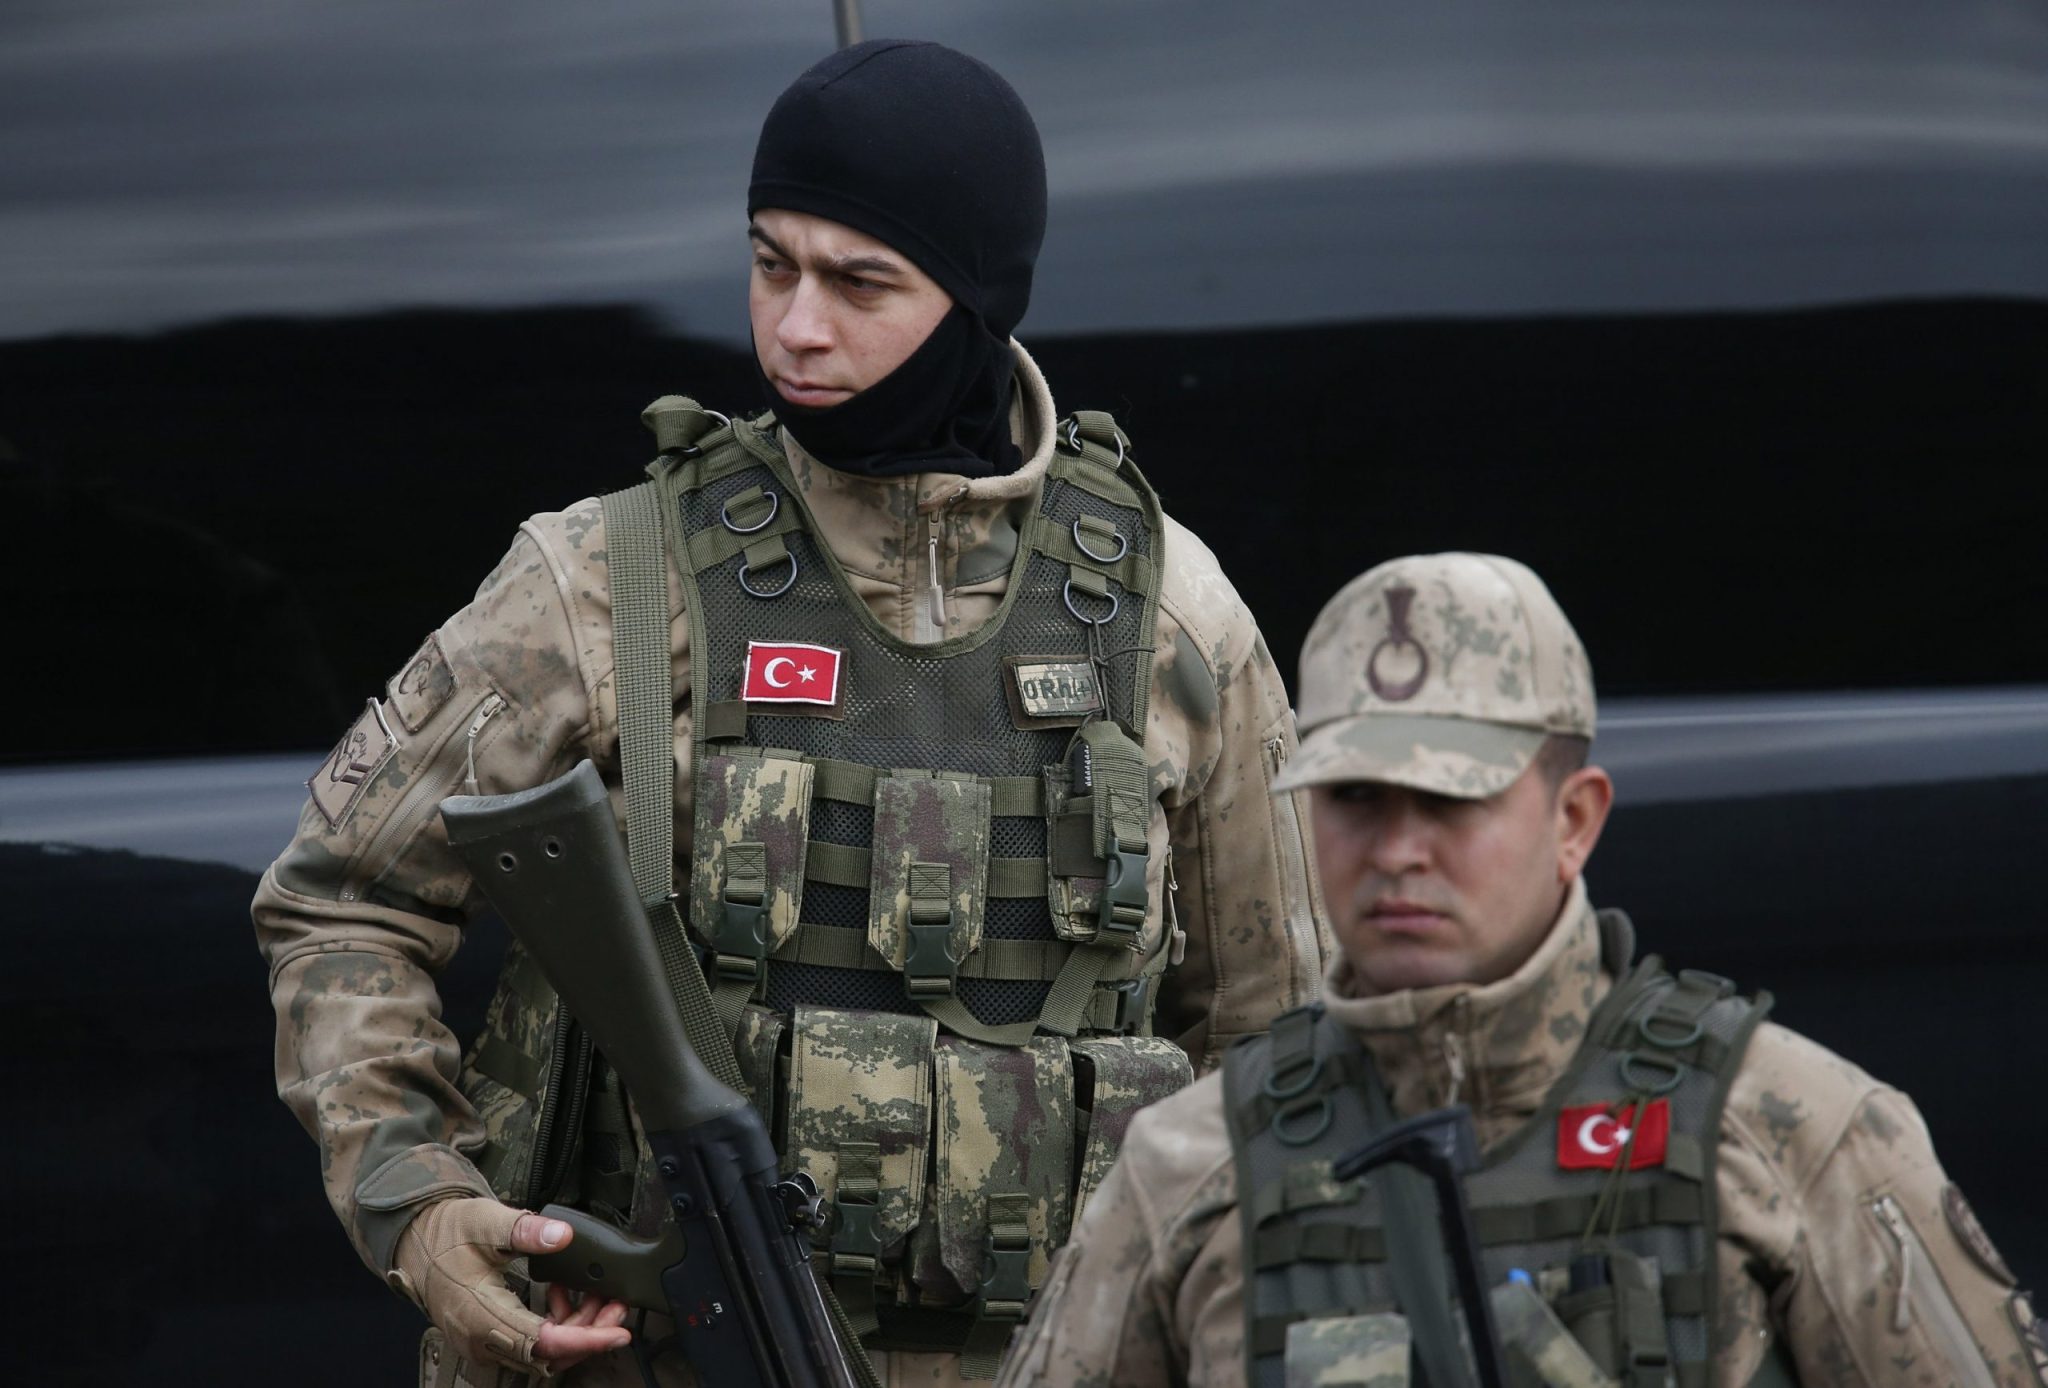 القيادة المركزية للجـ.ـيش التركي تضع 4 شـ.ـروط للانسحاب من سوريا وتسليم المناطق